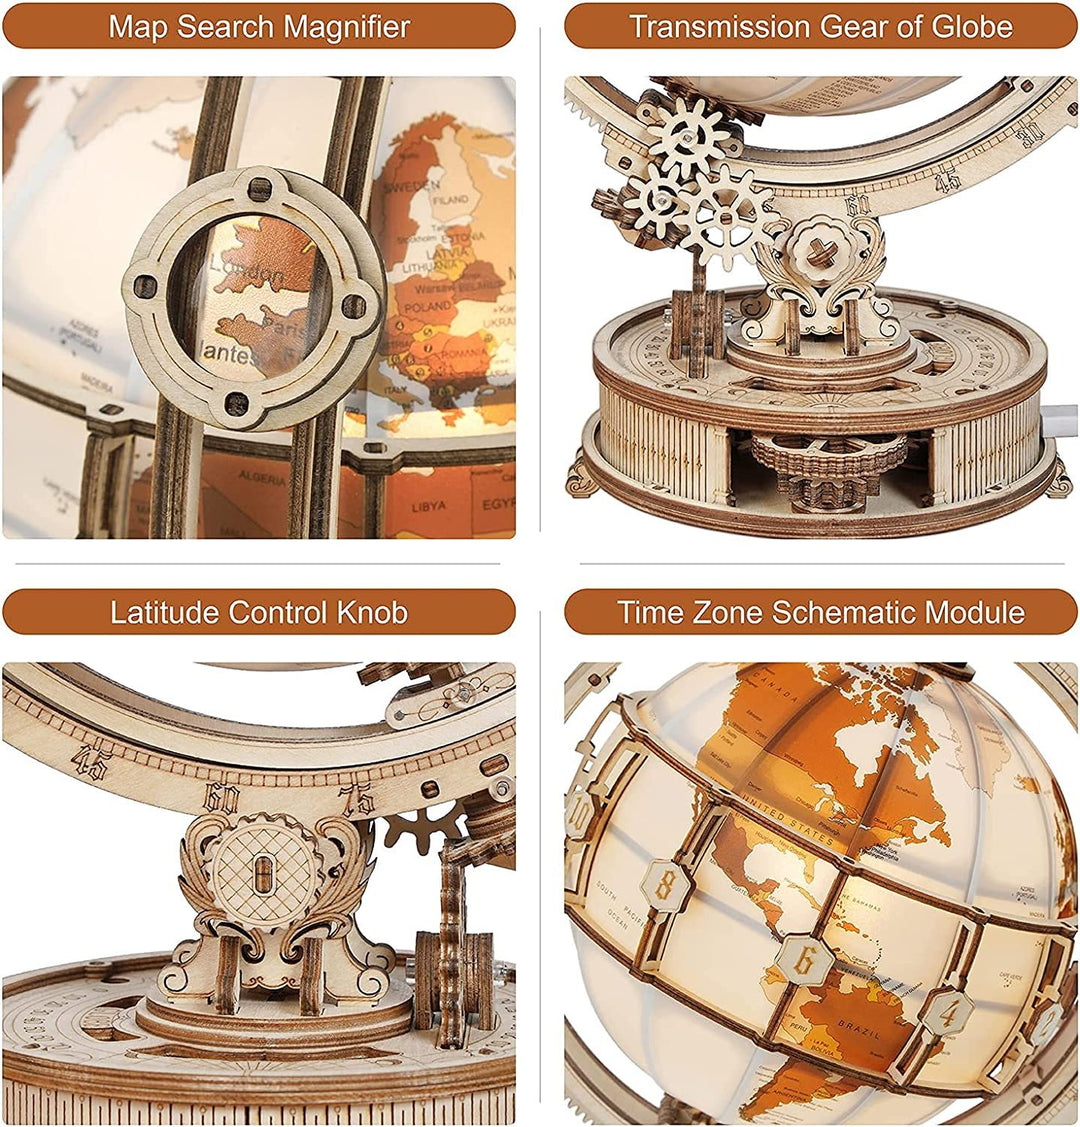 Rokr Luminous Globe 3D Wooden Hot Sprzedawanie 180pcs modele zestawów budulcowych